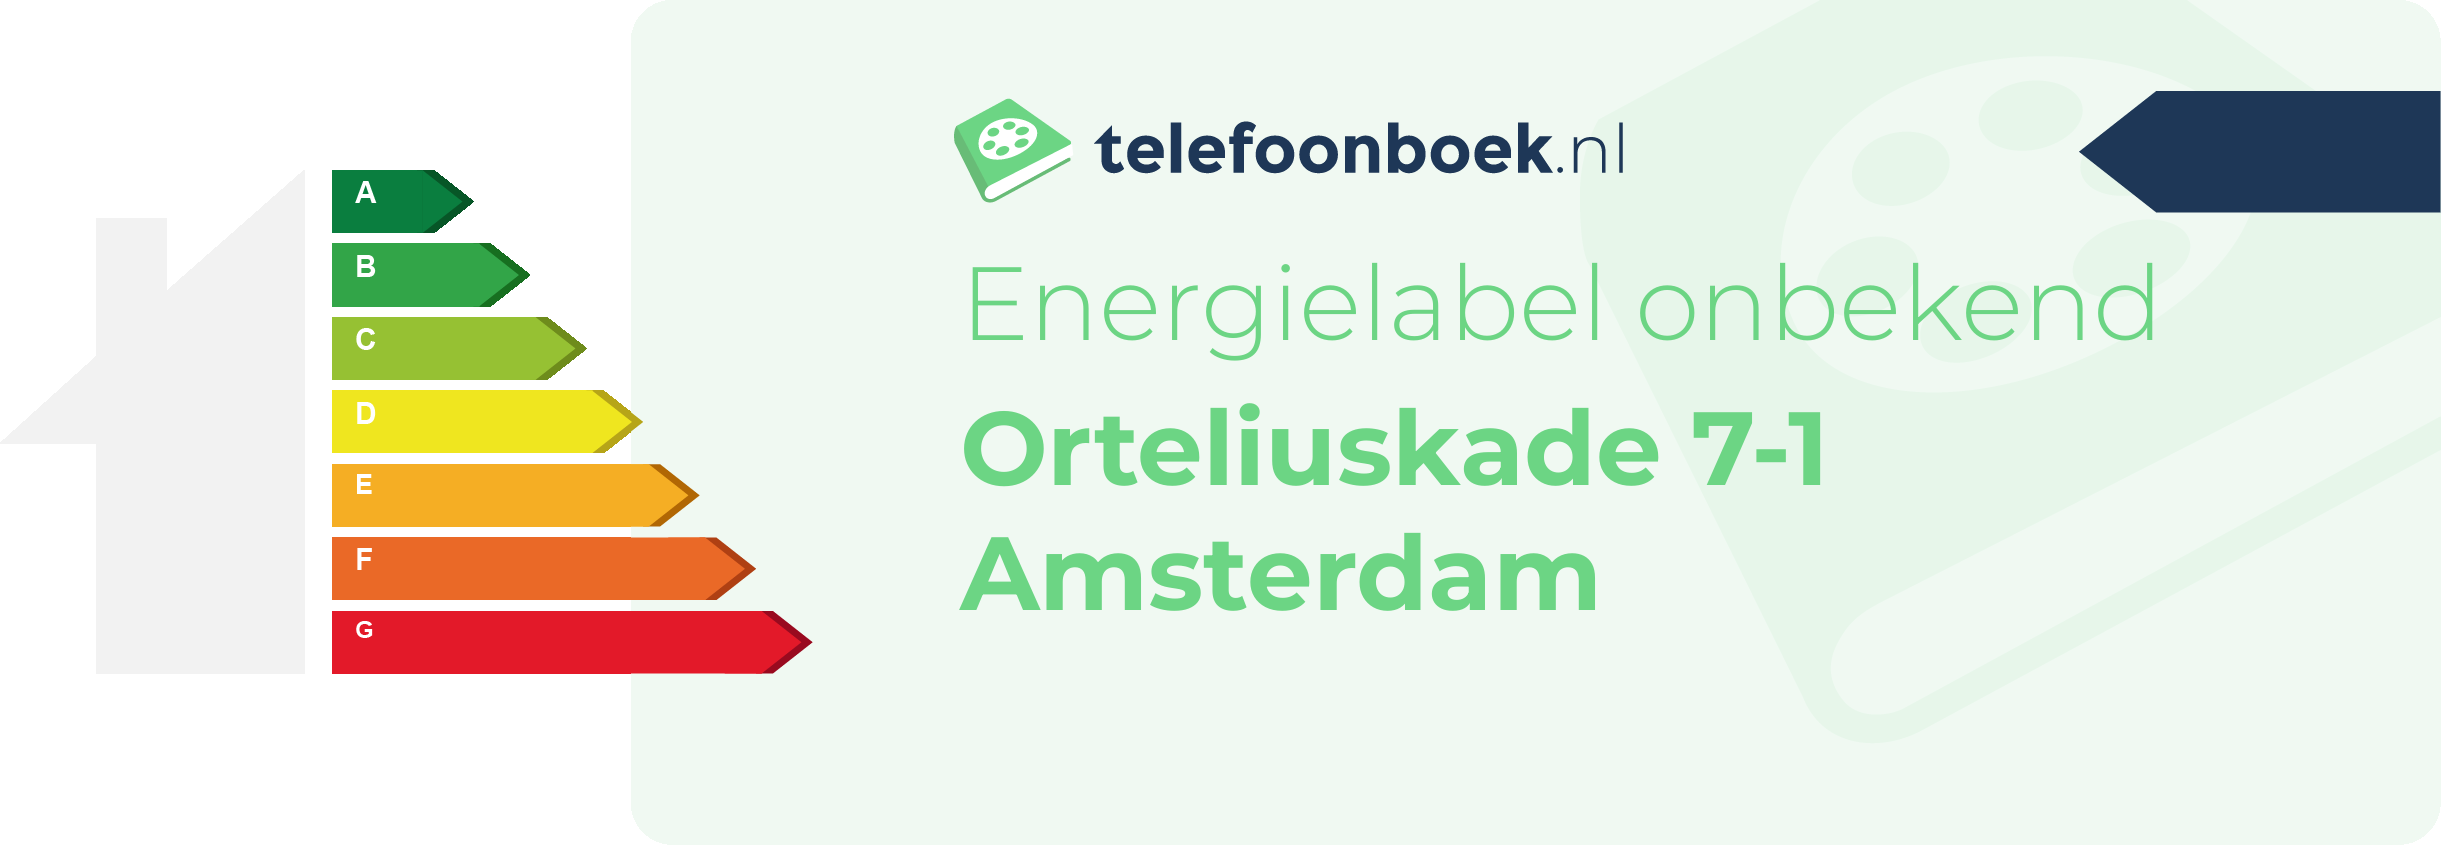 Energielabel Orteliuskade 7-1 Amsterdam